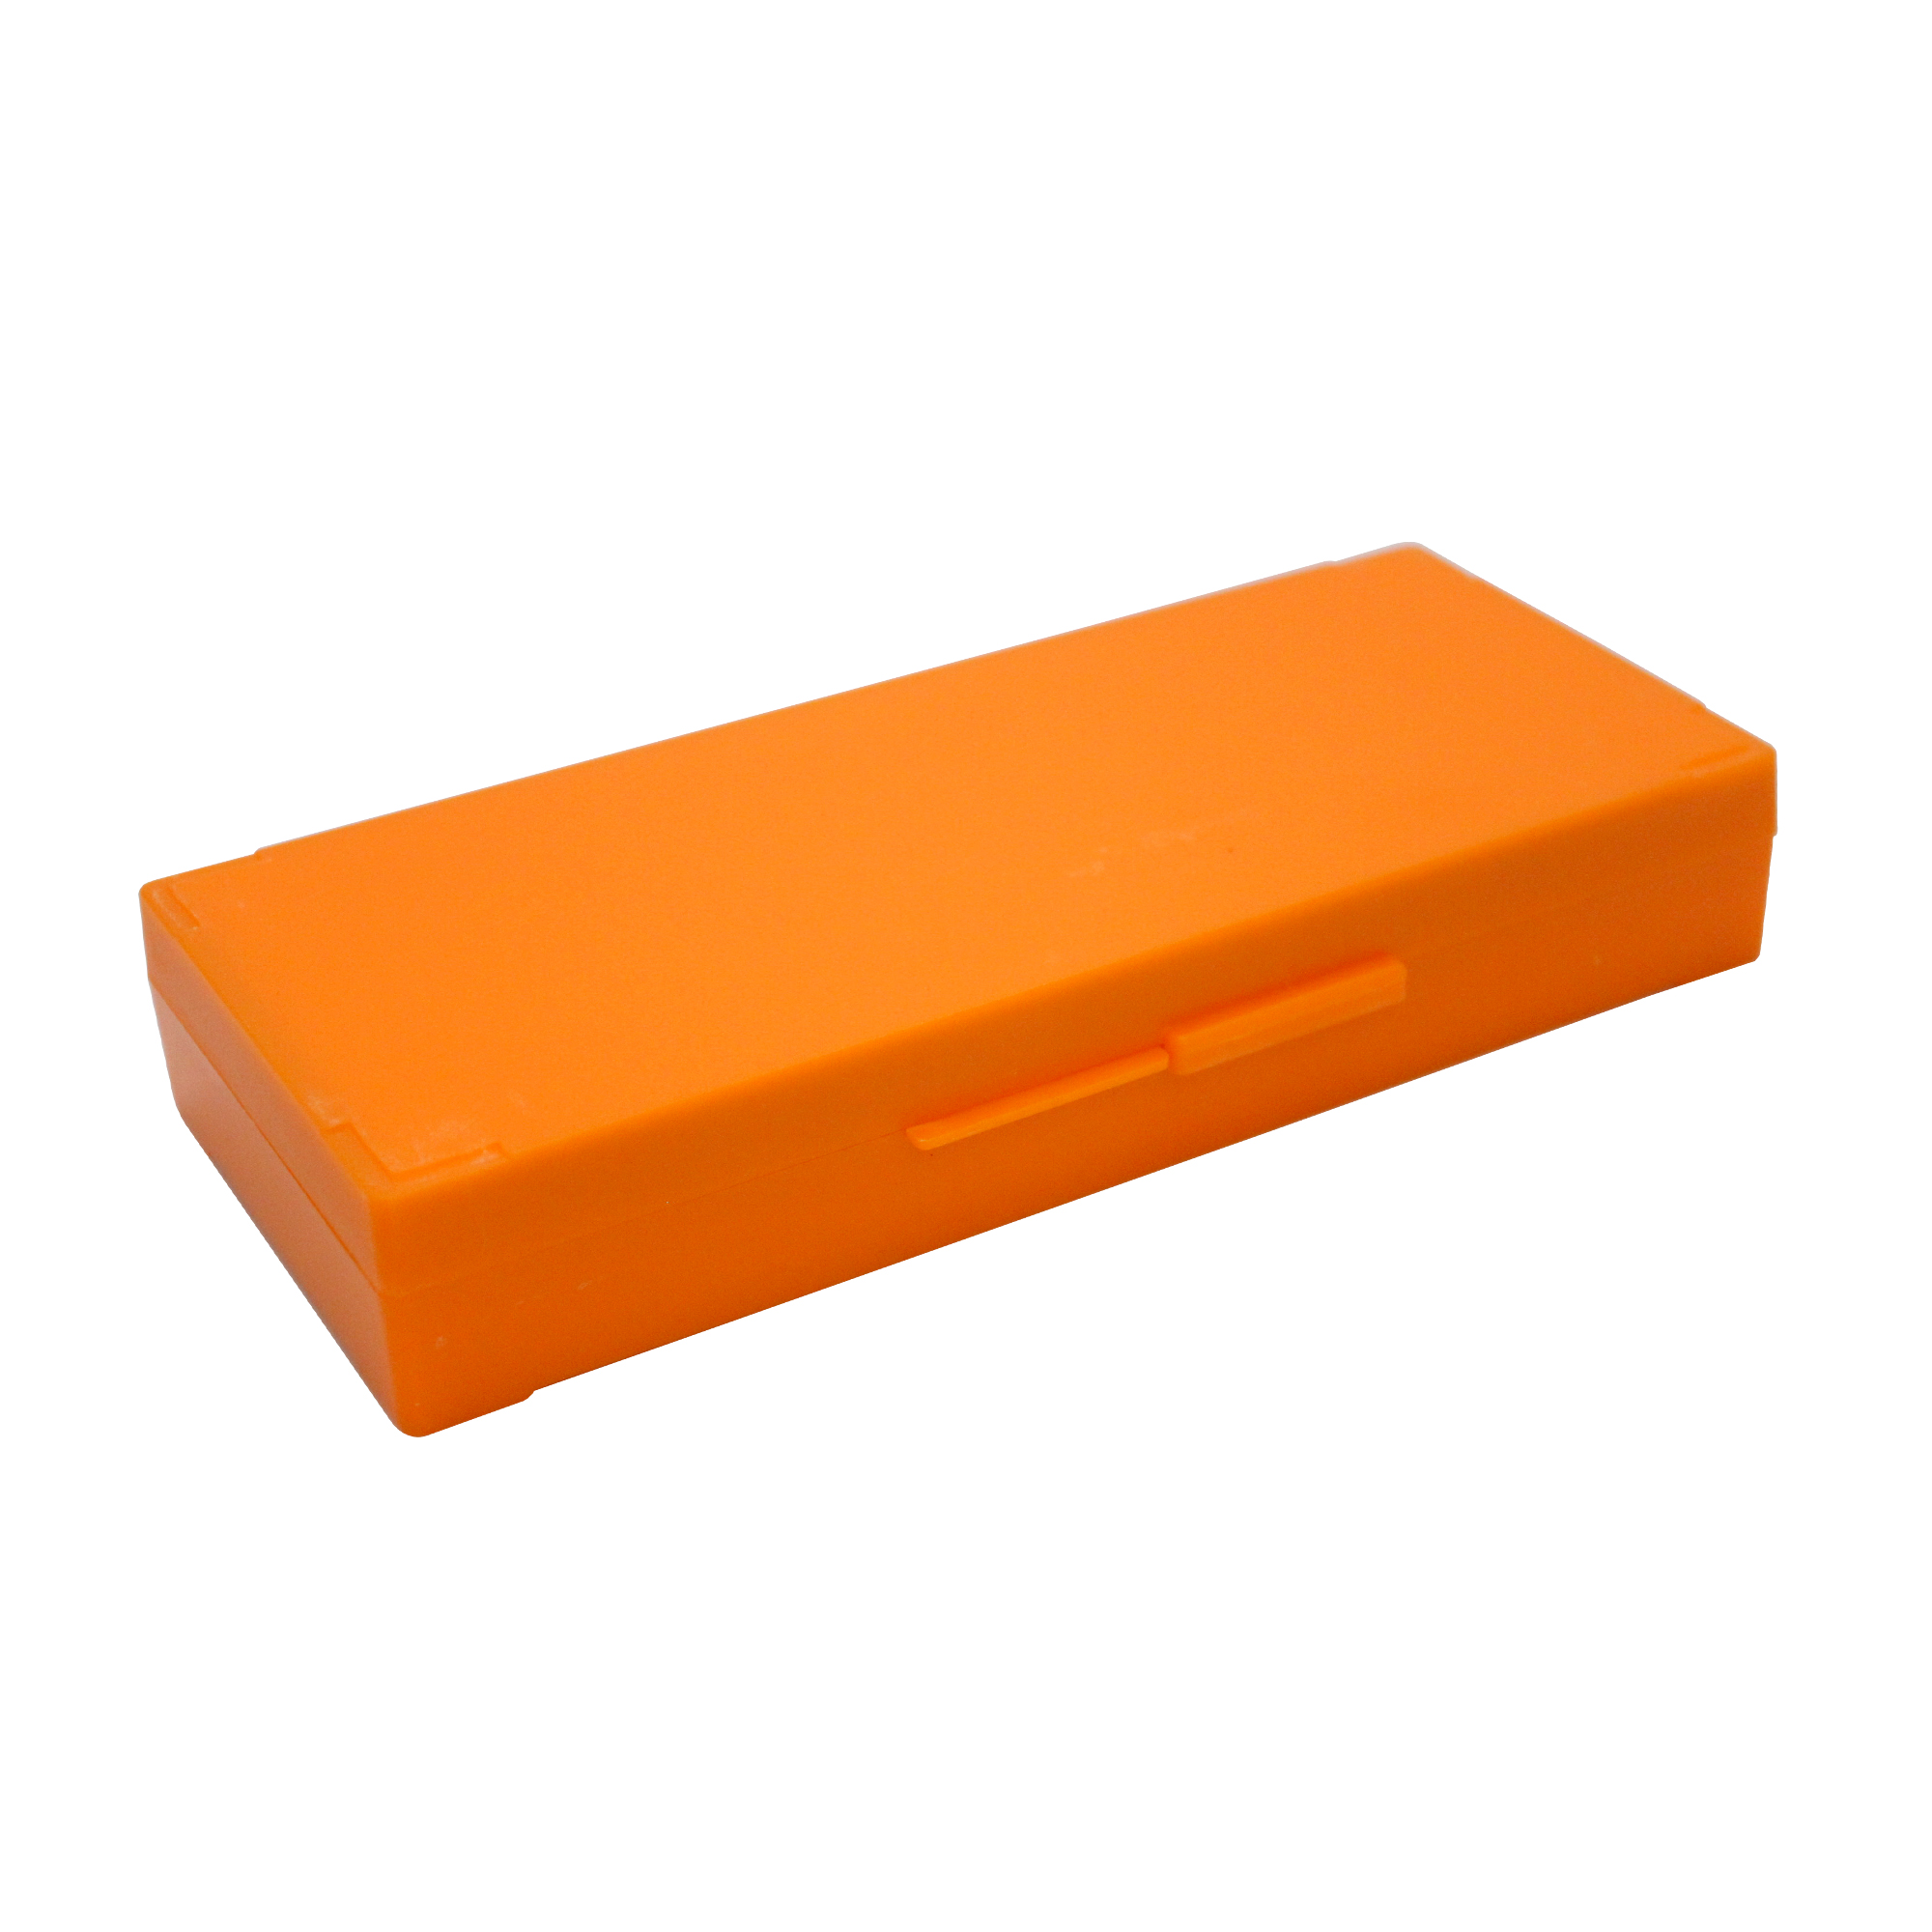 50片装载玻片存储盒,橘色